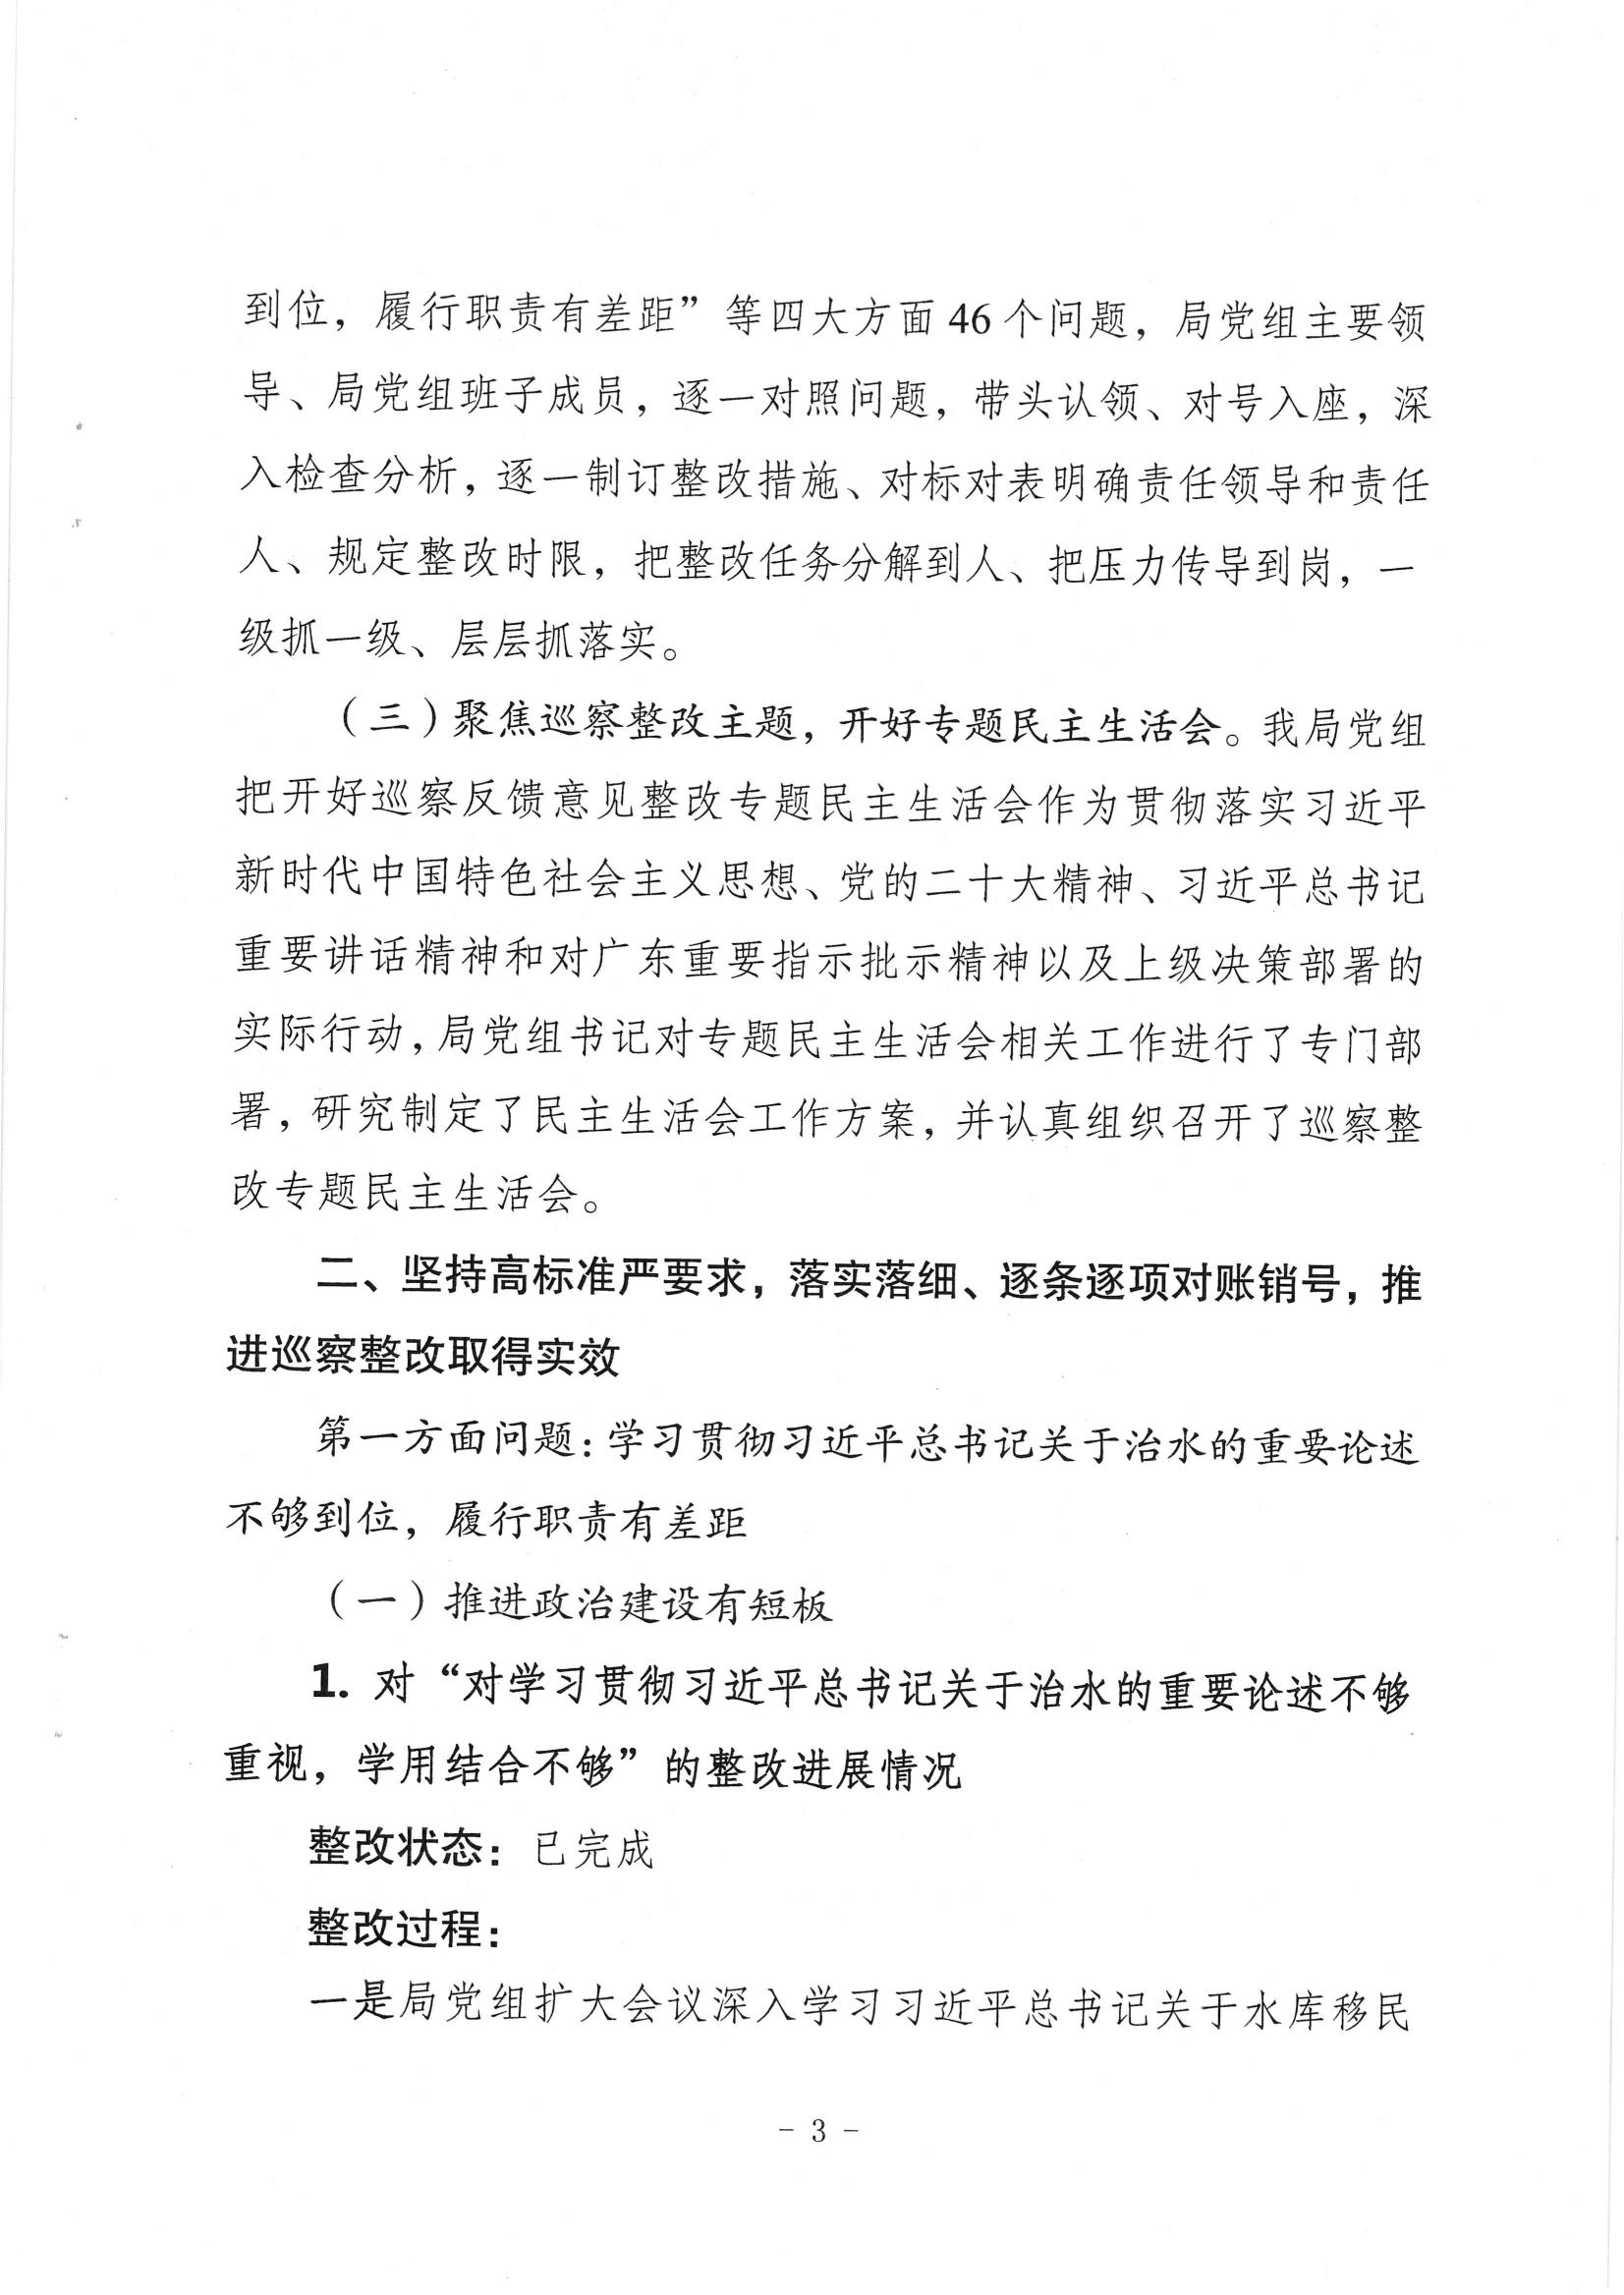 中共梅州市水务局党组关于落实八届市委第三轮巡察反馈意见的整改进展情况报告_02.jpg